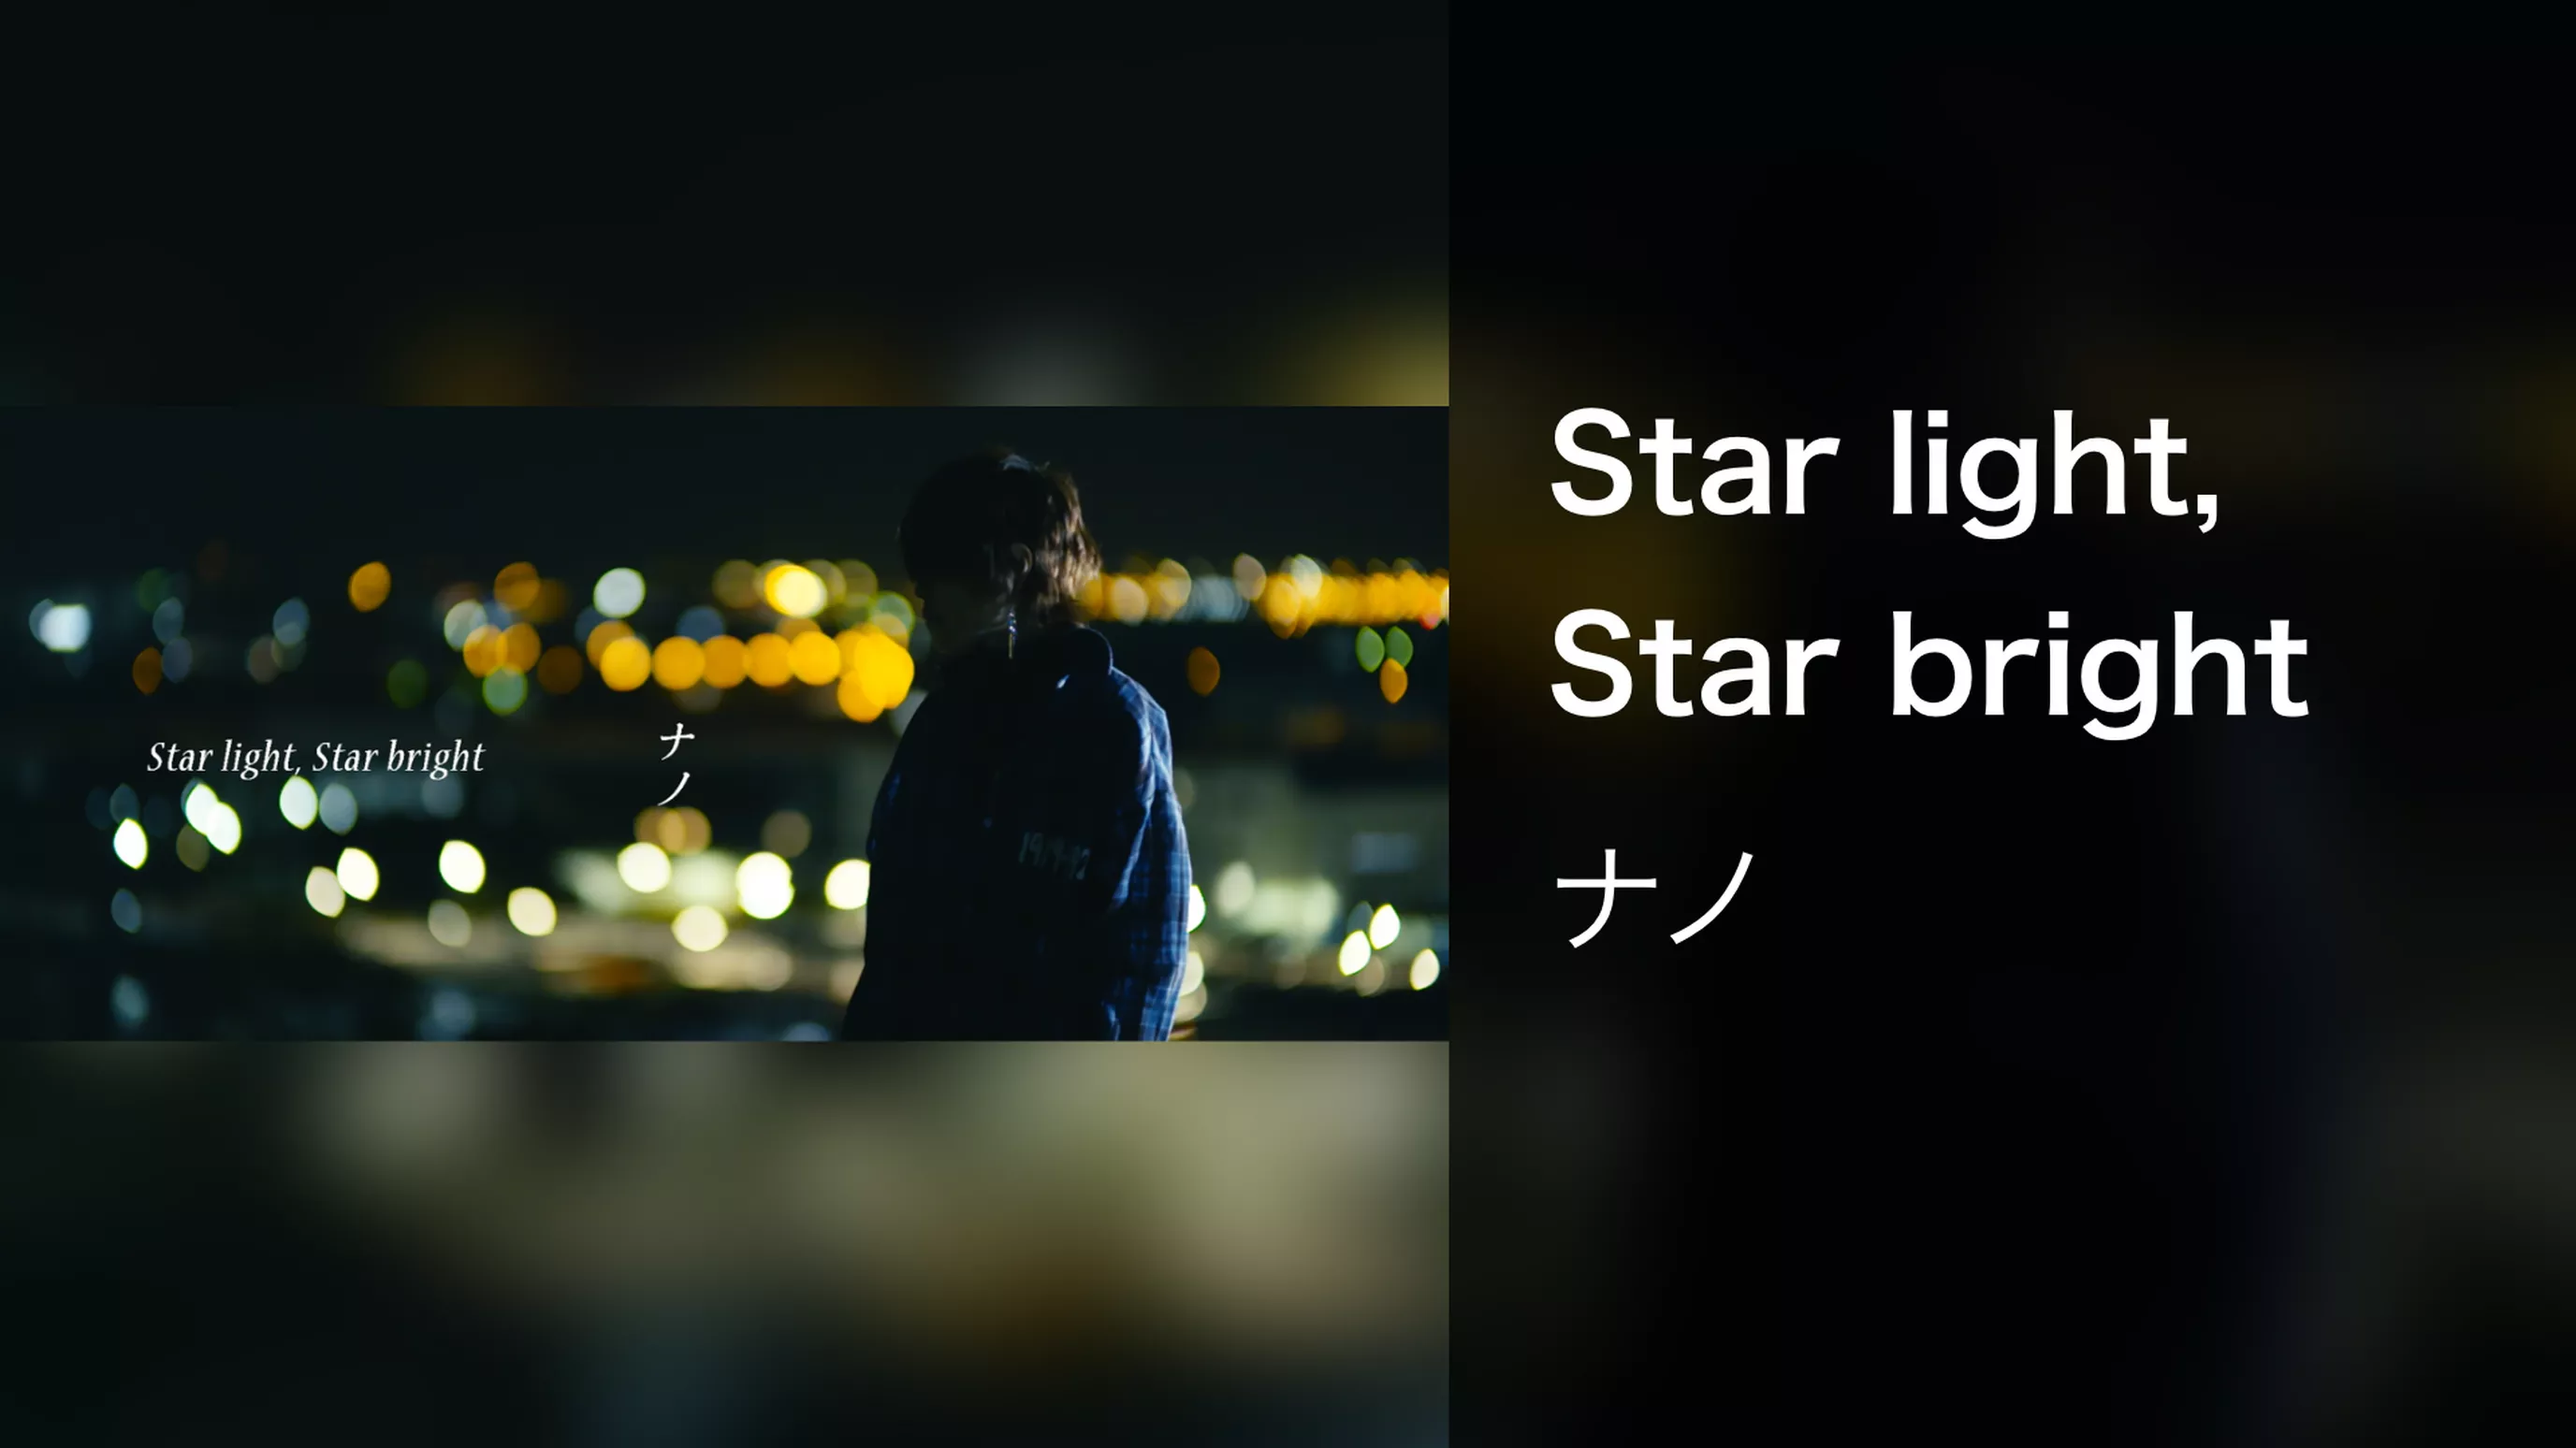 Star light, Star bright